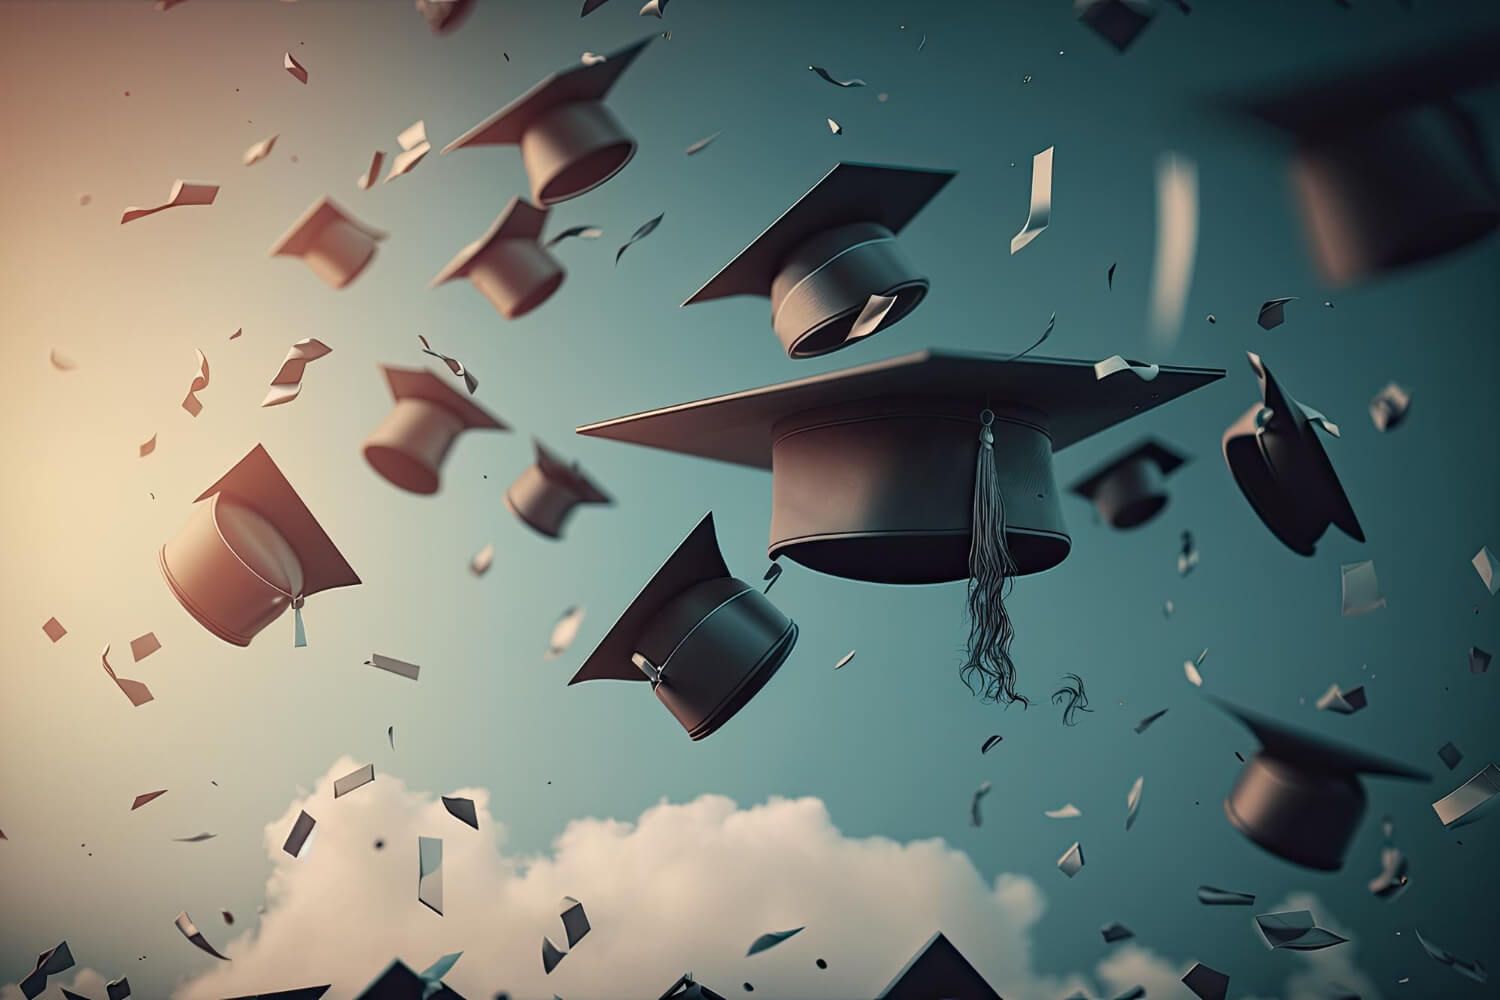 Graduation cap thrown in the air